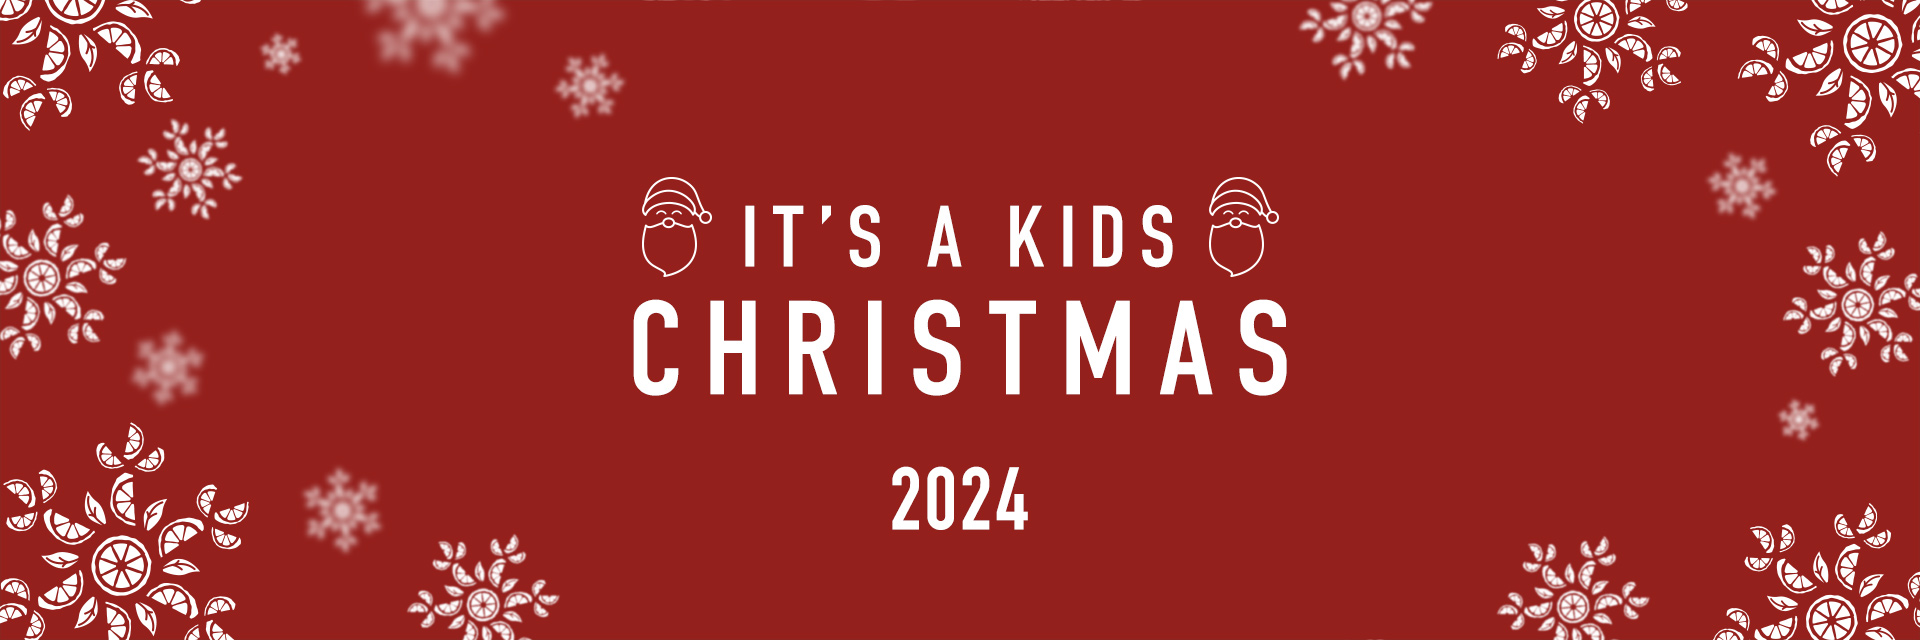 Kids Christmas Menu 2024 at YEOMAN NUNEATON